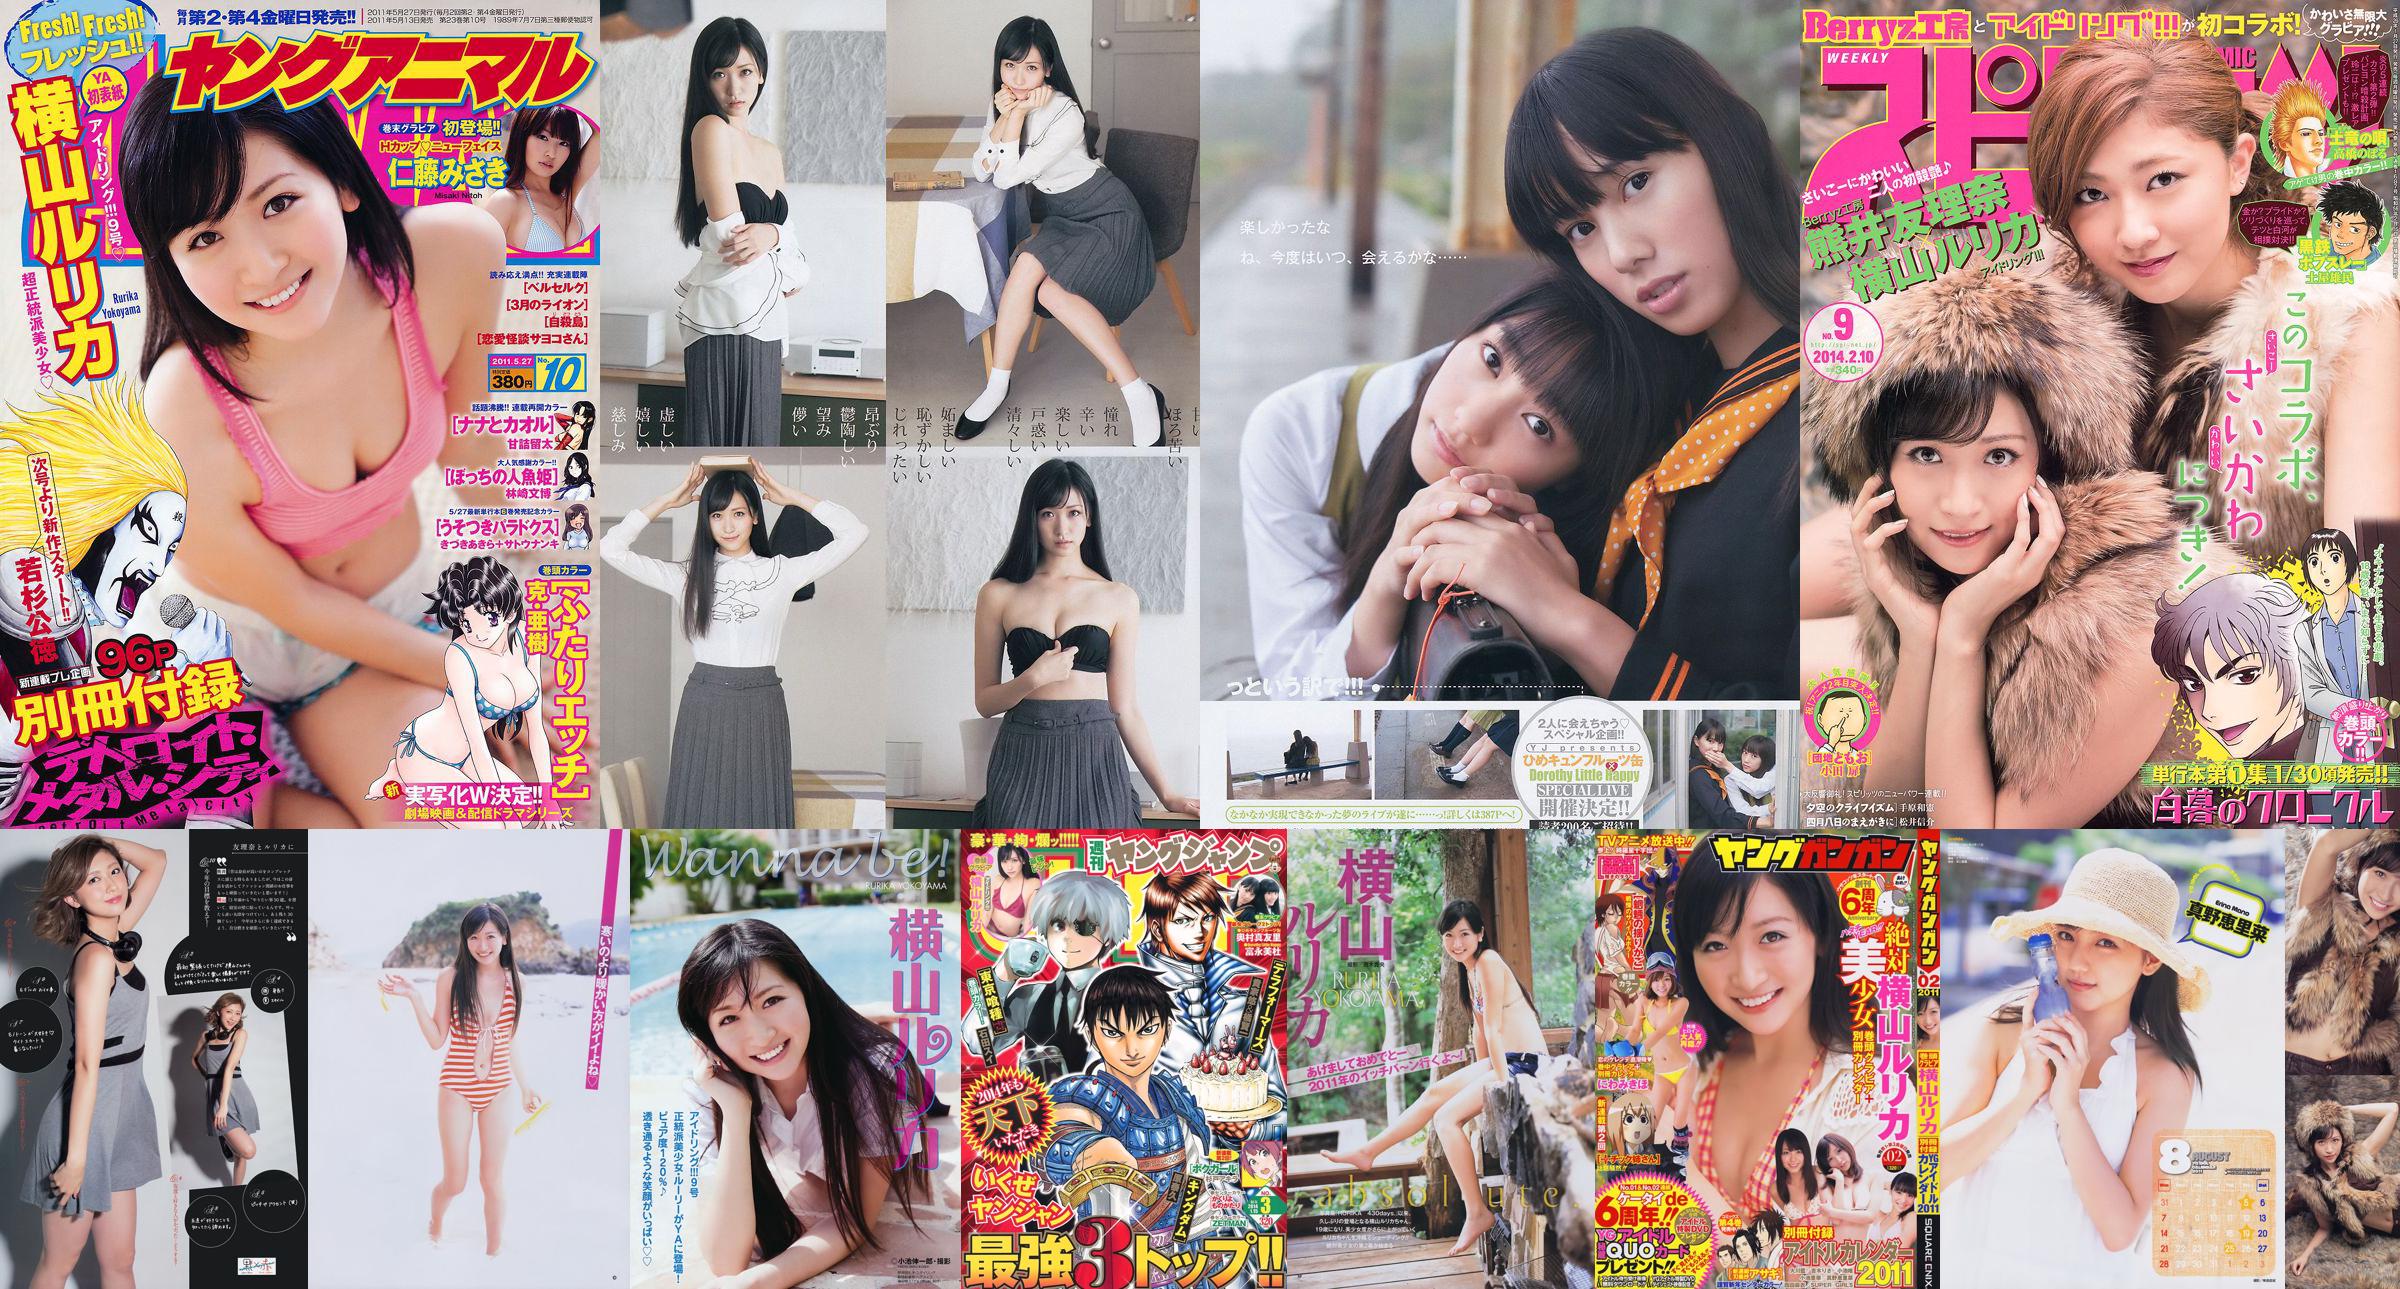 [Young Gangan] Rurika Yokoyama 2011 Magazine photo n ° 02 No.73d9fe Page 1